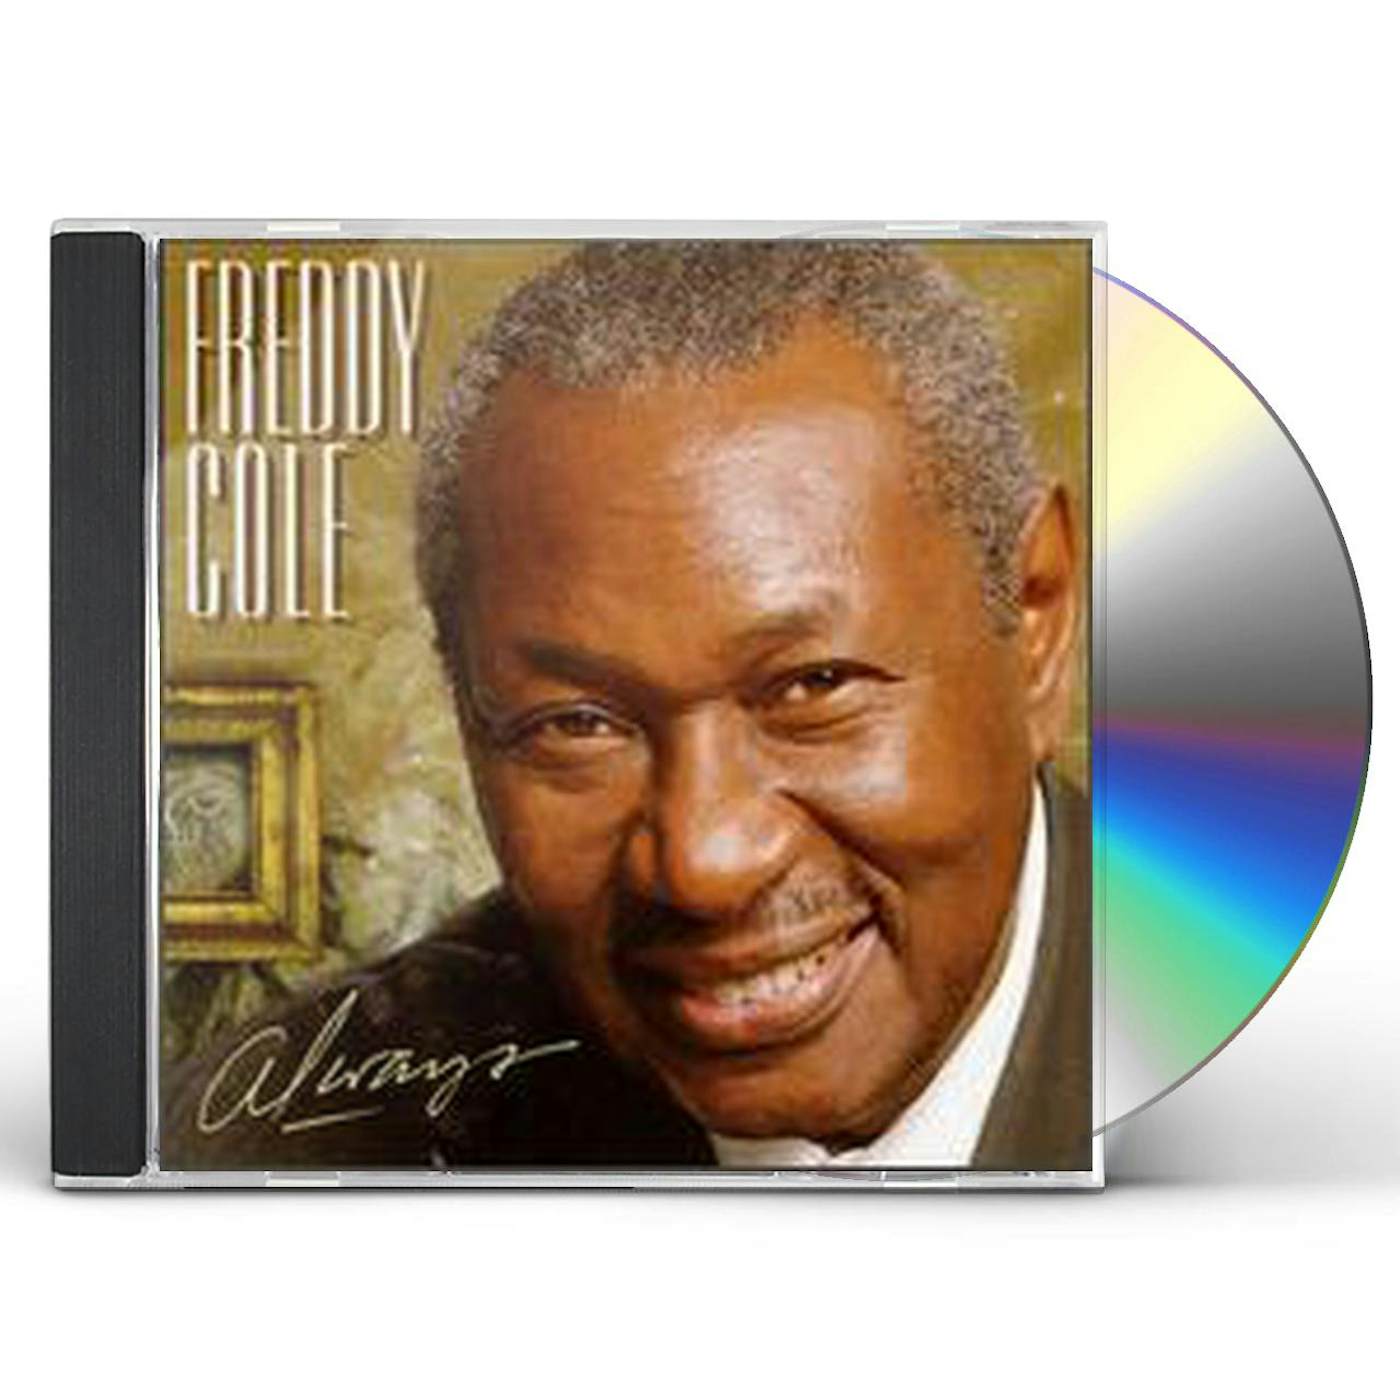 Freddy Cole ALWAYS CD